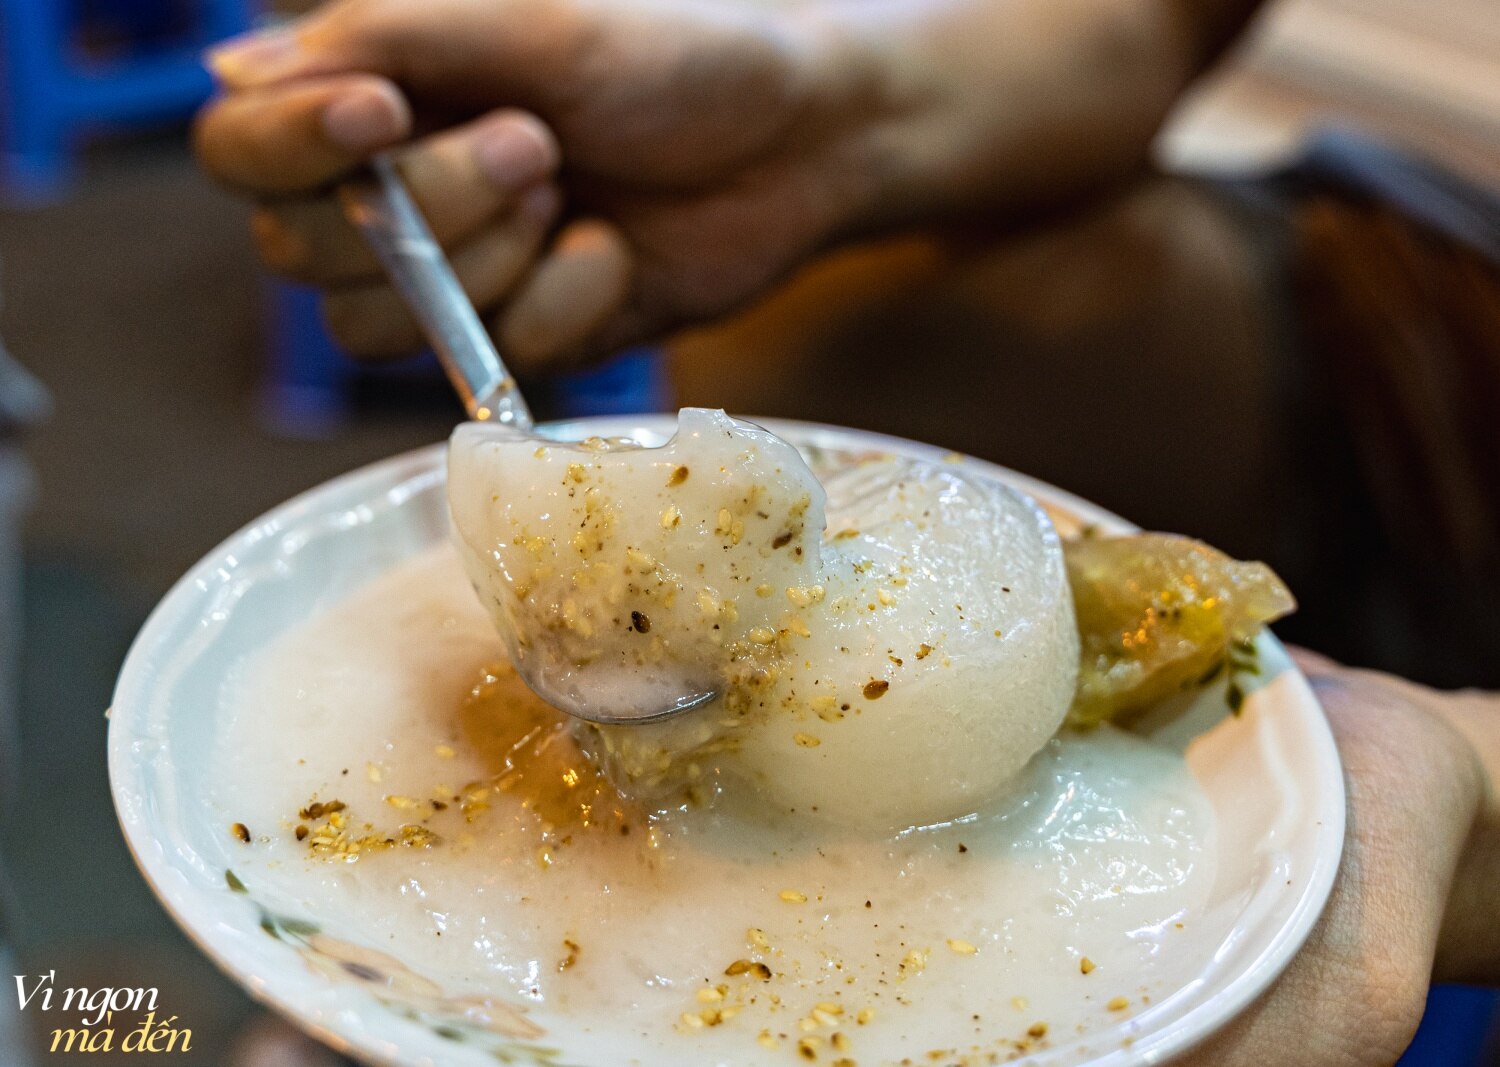 Người Sài Gòn thích thú ăn chè nóng giữa thời tiết mùa hè oi bức, hóa ra quán vỉa hè "mẹ truyền con nối" đã có tuổi đời 50 năm - Ảnh 9.